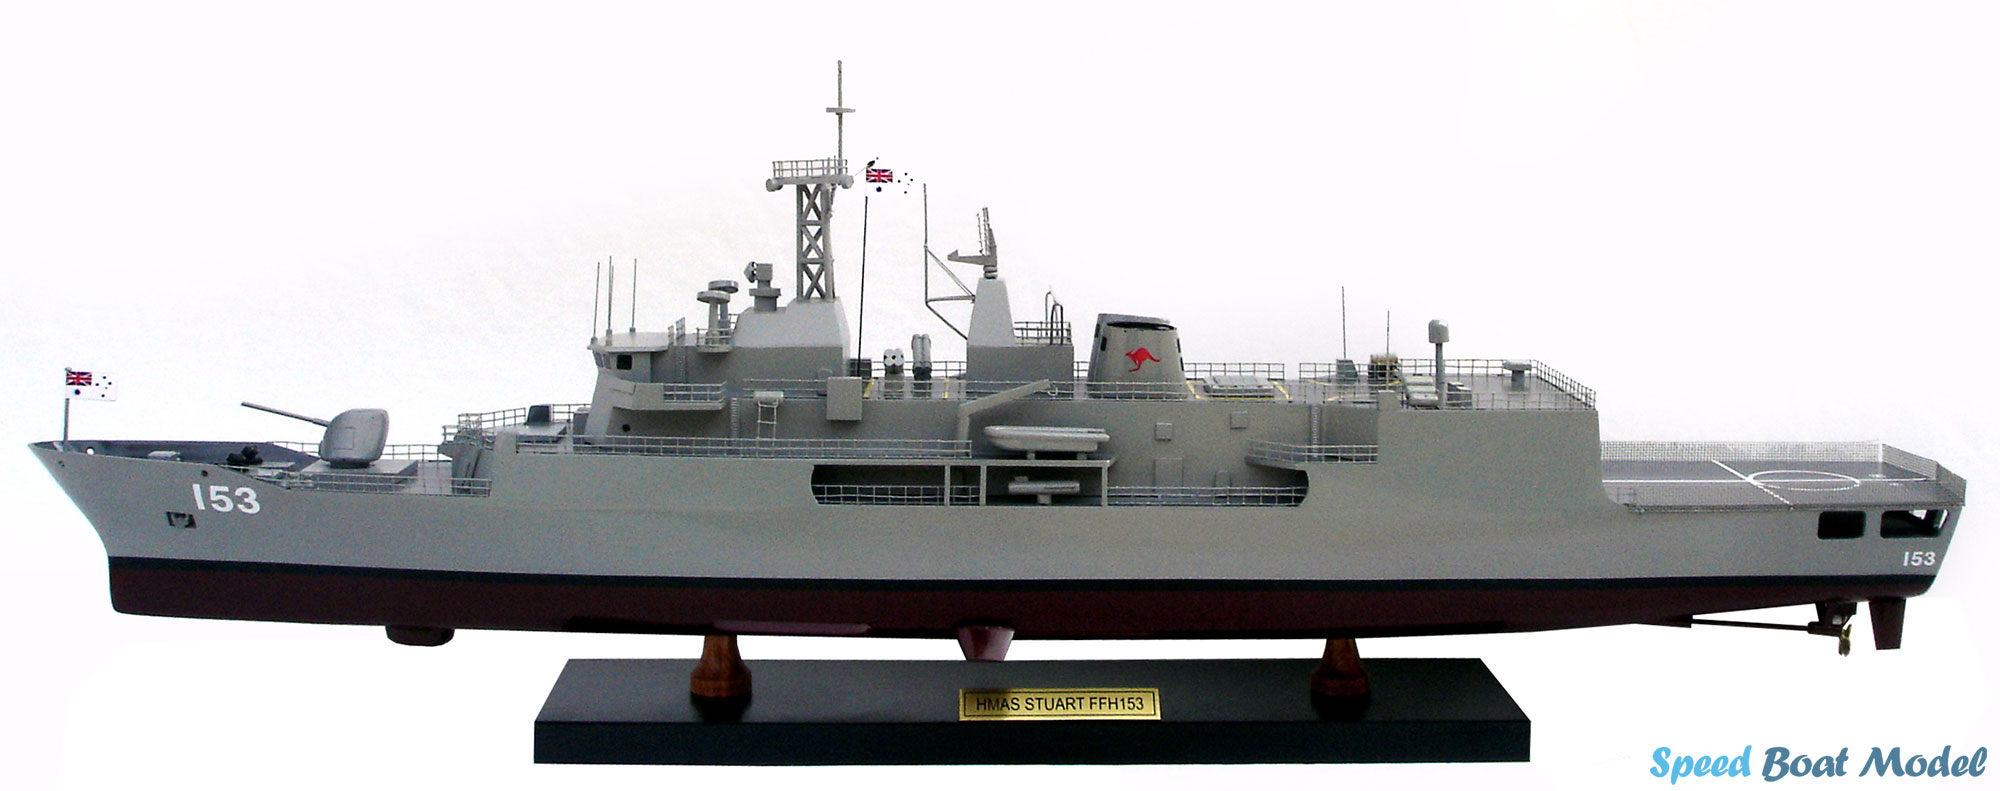 Hmas Stuart Ffh 153 Warship Model 31.5"